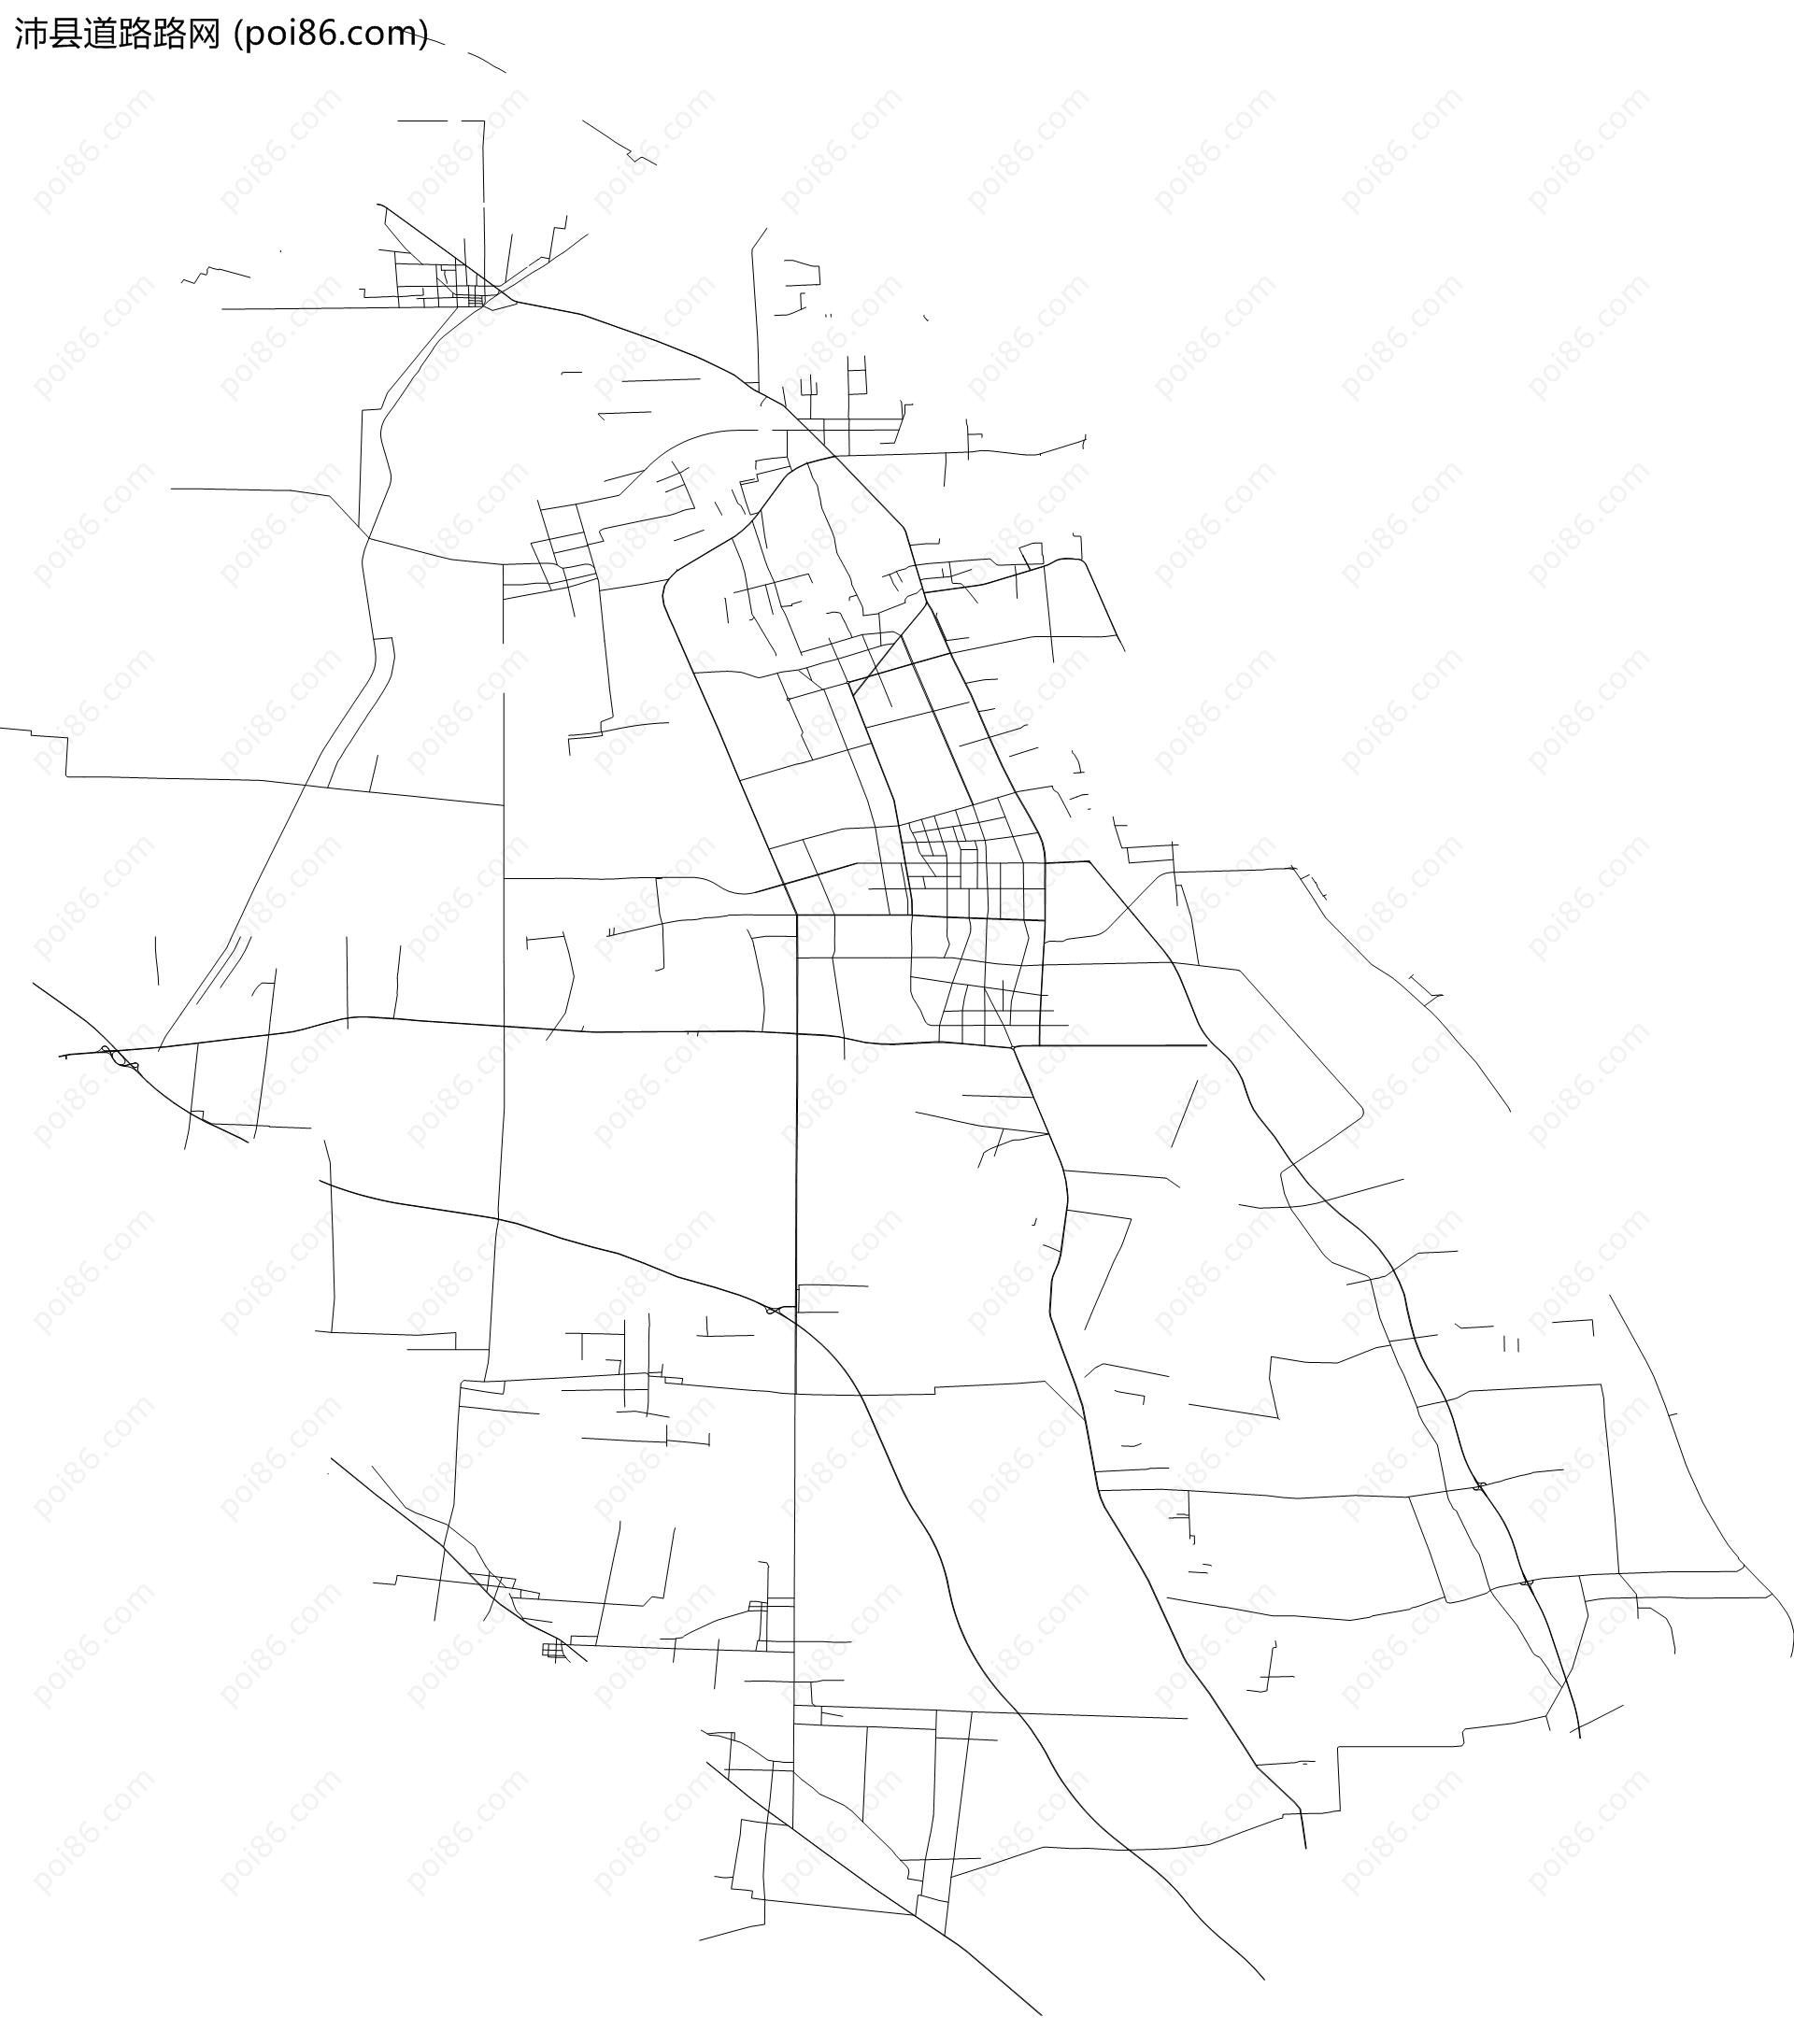 高德沛县POI数据|边界|建筑轮廓|铁路轨道|道路路网|水域|水系水路|GeoJSON|Shapefile-徐州市-江苏省-高德POI数据-POI数据